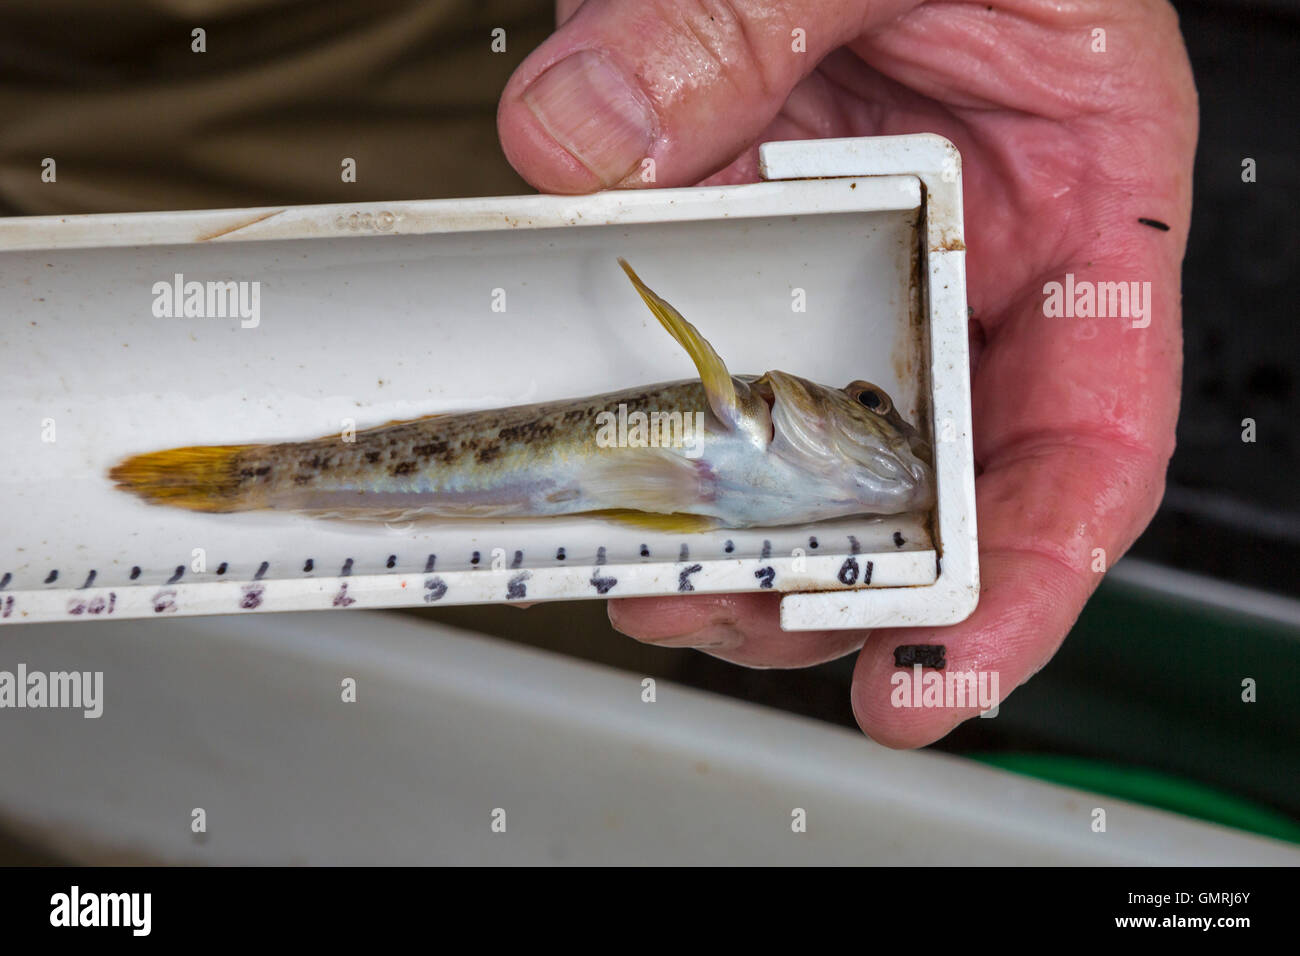 Wayne, Michigan - Un gobie à taches noires (Neogobius melanostomus) trouvés au cours d'étude sur les poissons de la rivière Rouge. Banque D'Images